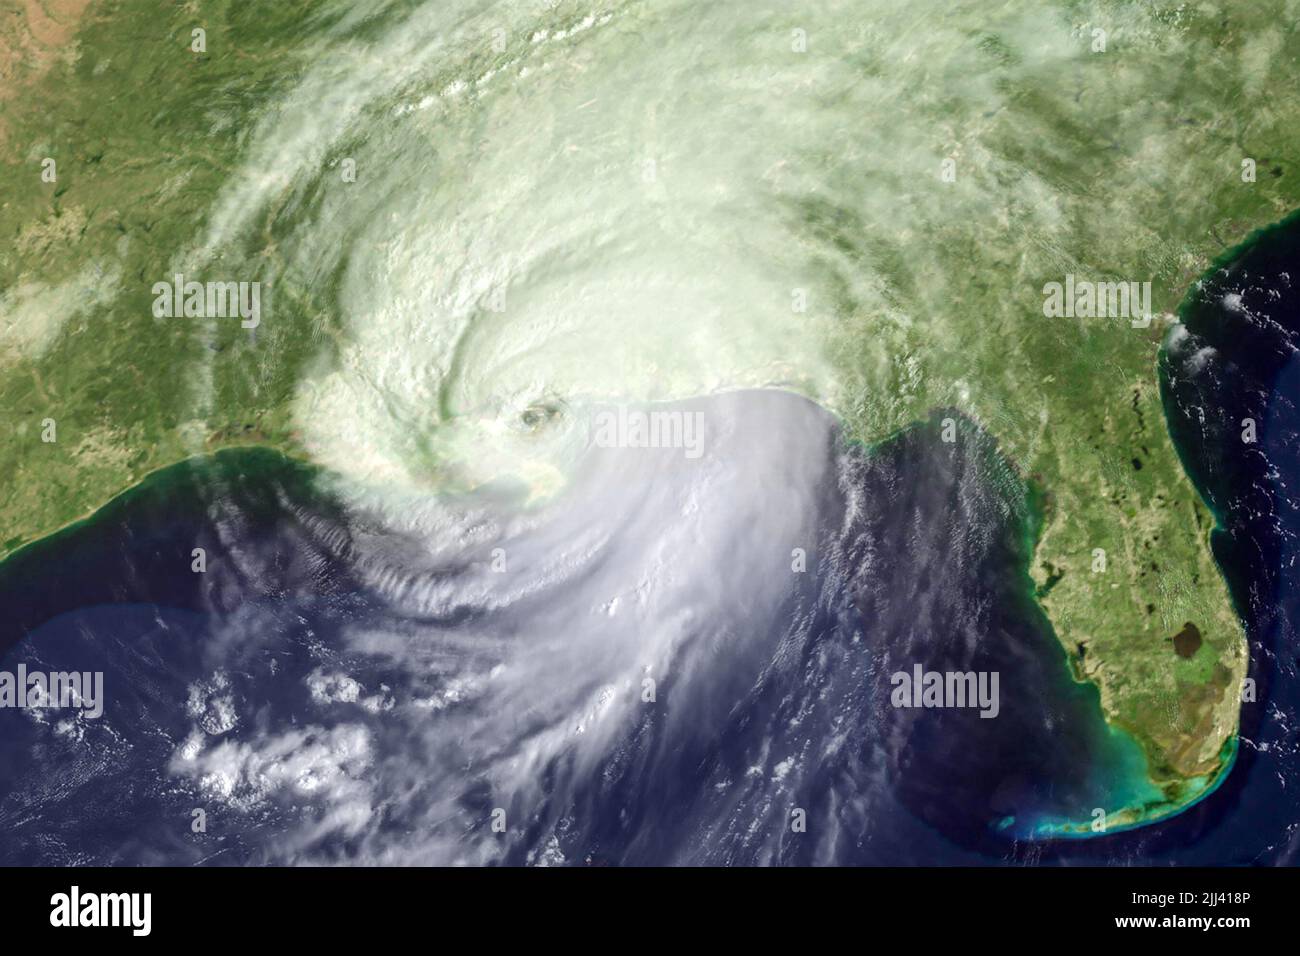 Hurrikan Katrina, ein verheerender Sturm der Kategorie 5, der am 29. August 2005 in der Nähe von New Orleans, Louisiana, landeinstürze. (USA) Stockfoto